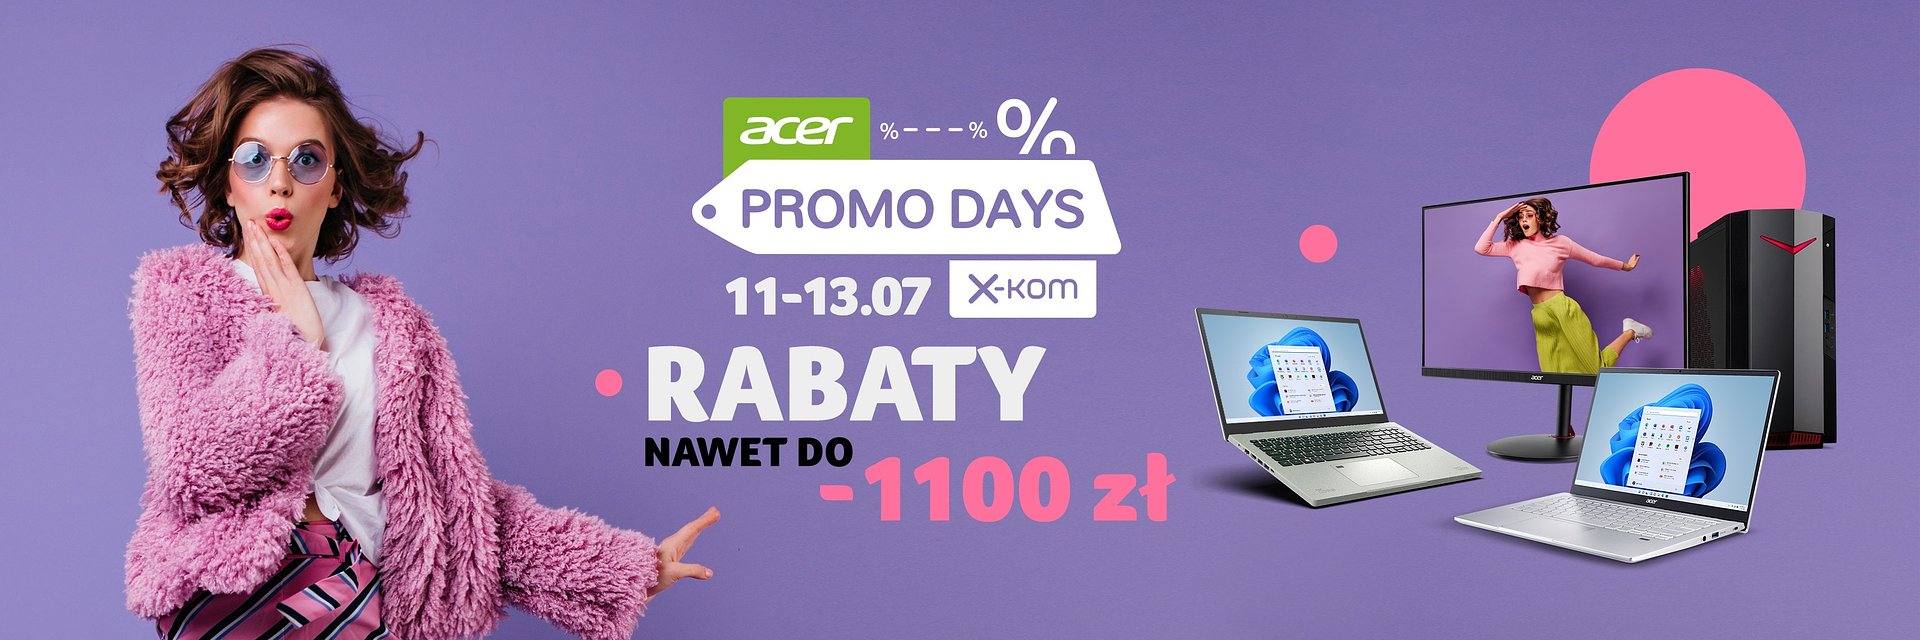 Acer i x-kom ruszają z akcją Promo Days. Sprzęt taniej o nawet 1100 zł!